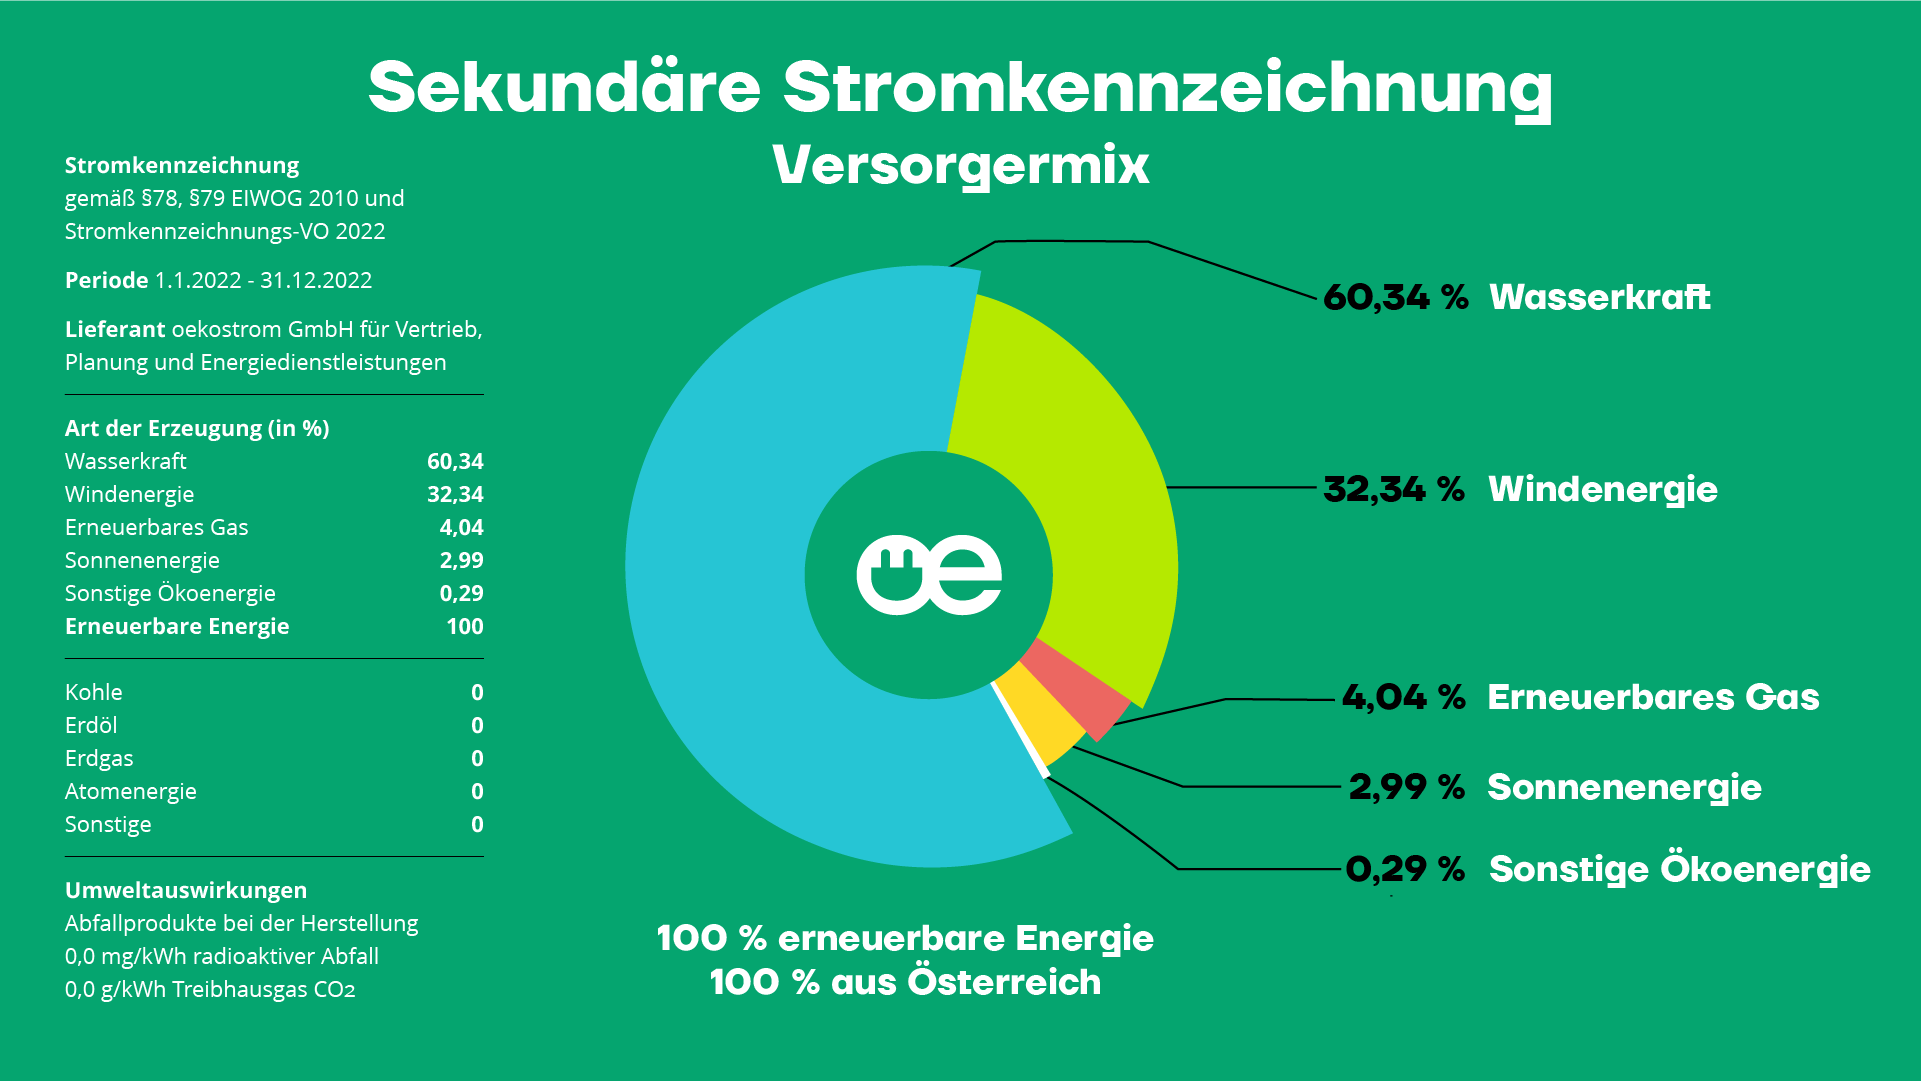 Sekundäre Stromkennzeichnung Versorgermix der oekostrom AG 2022